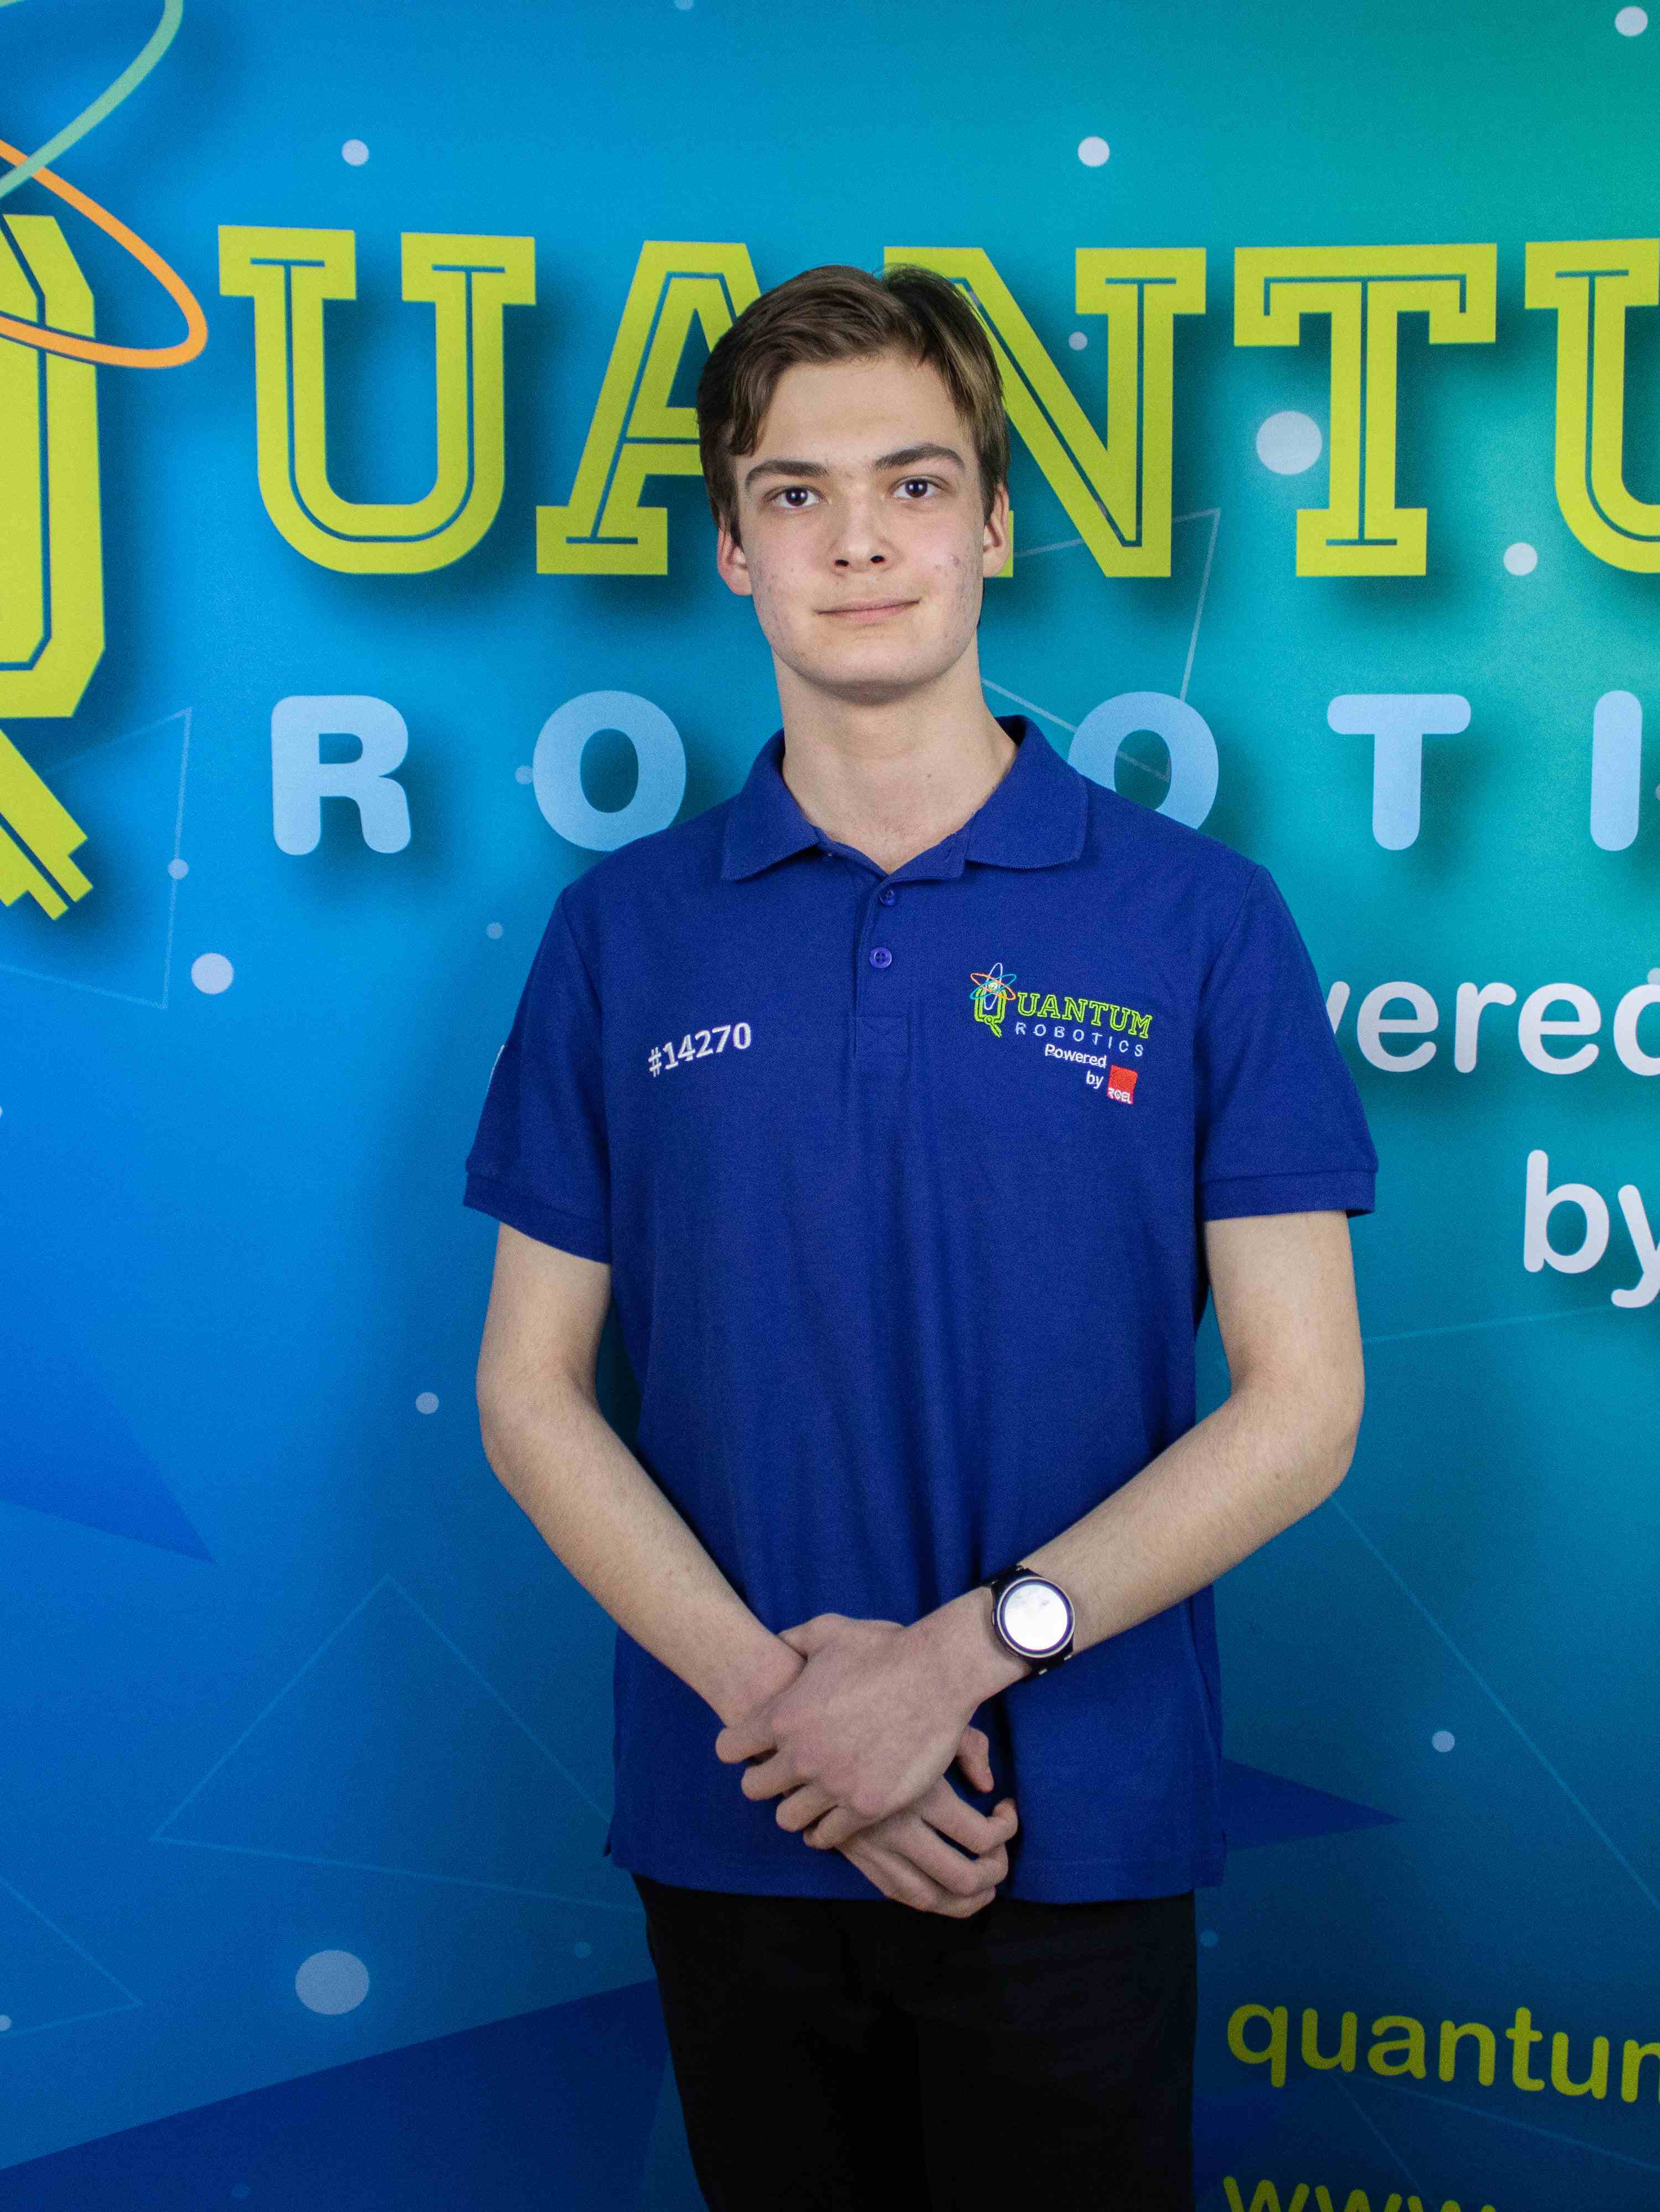 Quantum-Robotics-FTC-FIRST-competiton-team-members-Luca-Nicolae